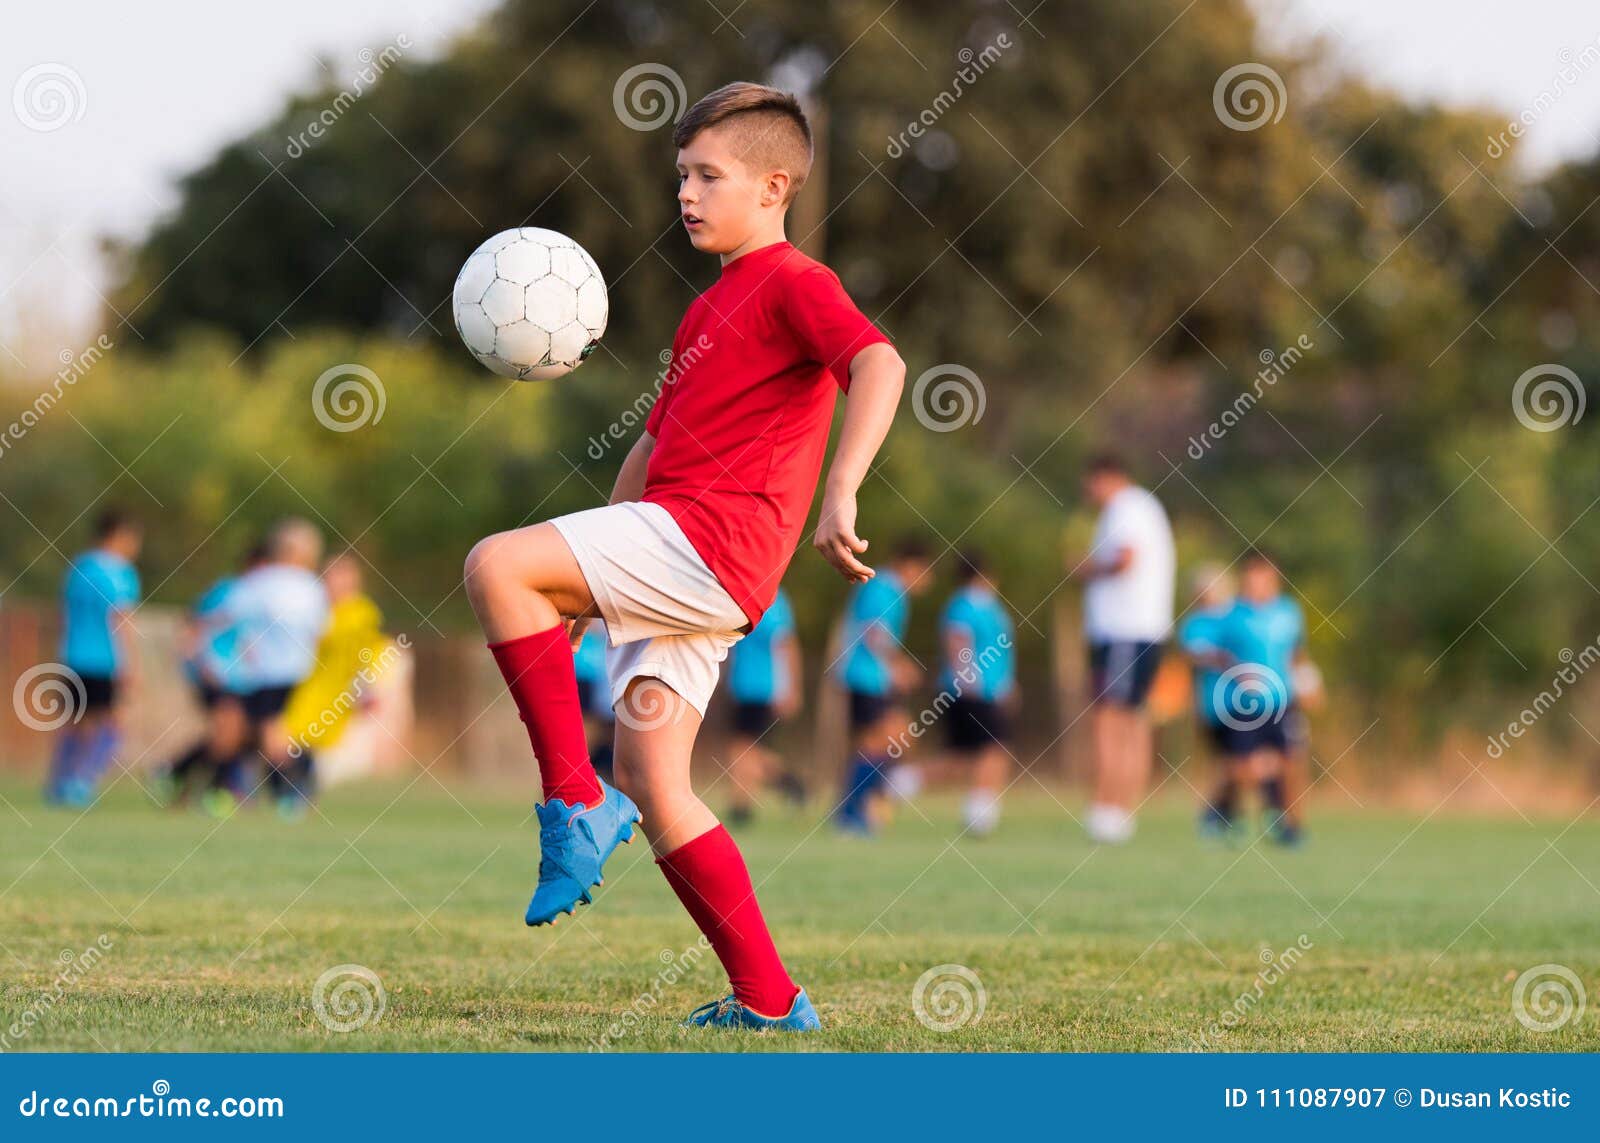 Мальчик на спортивной площадке